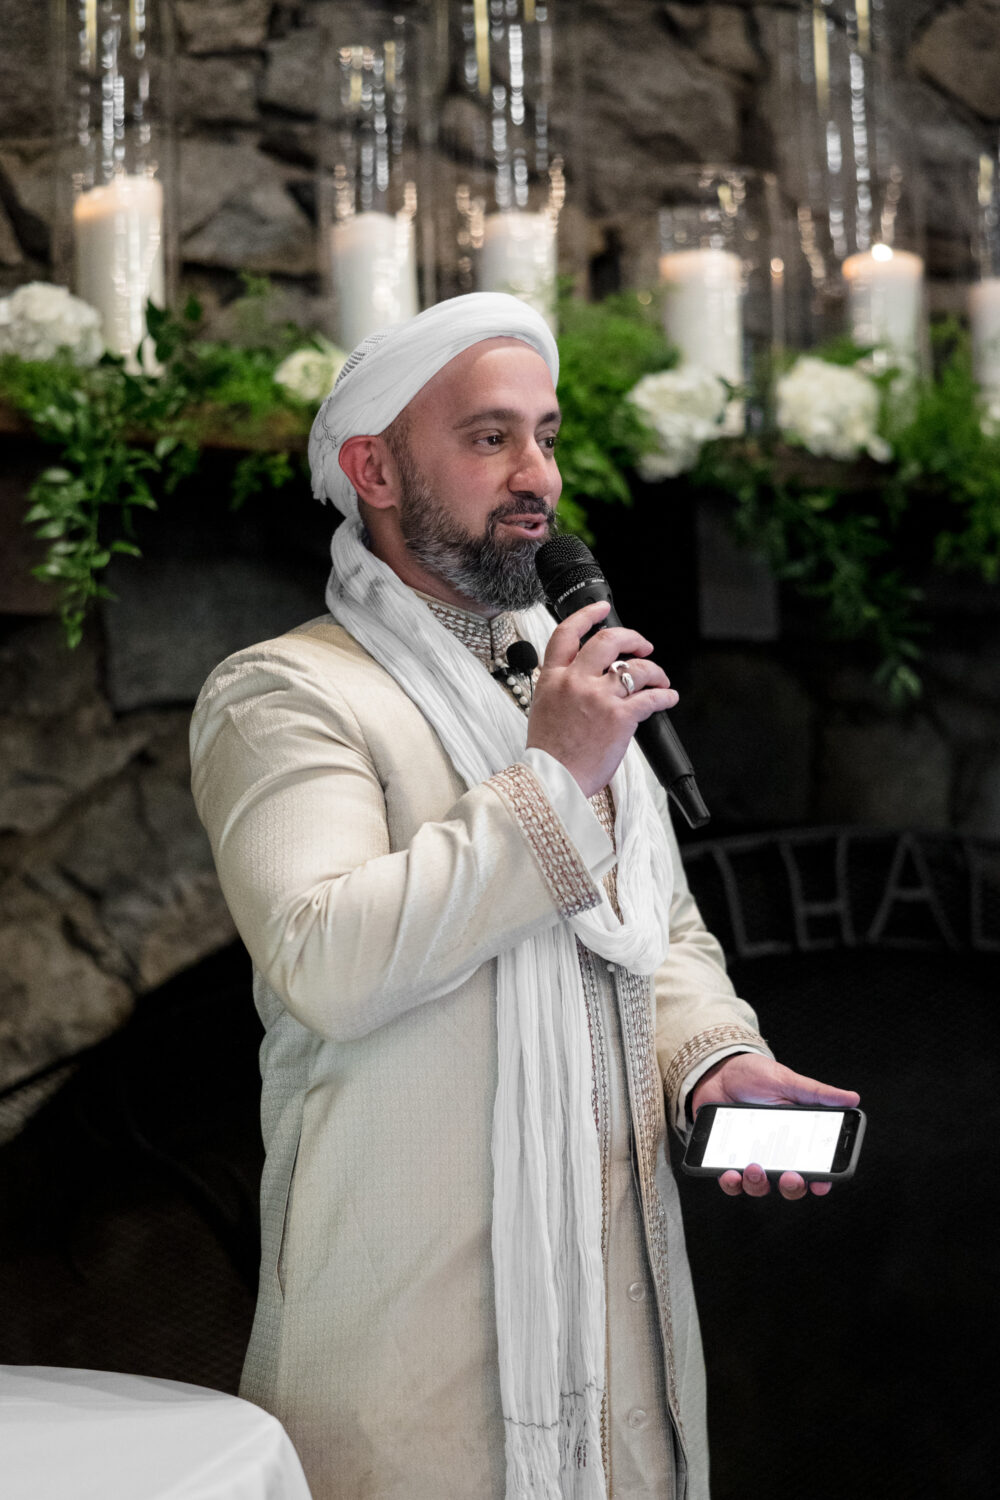 Imam Khalid Latif presents a sermon at a Muslim wedding.